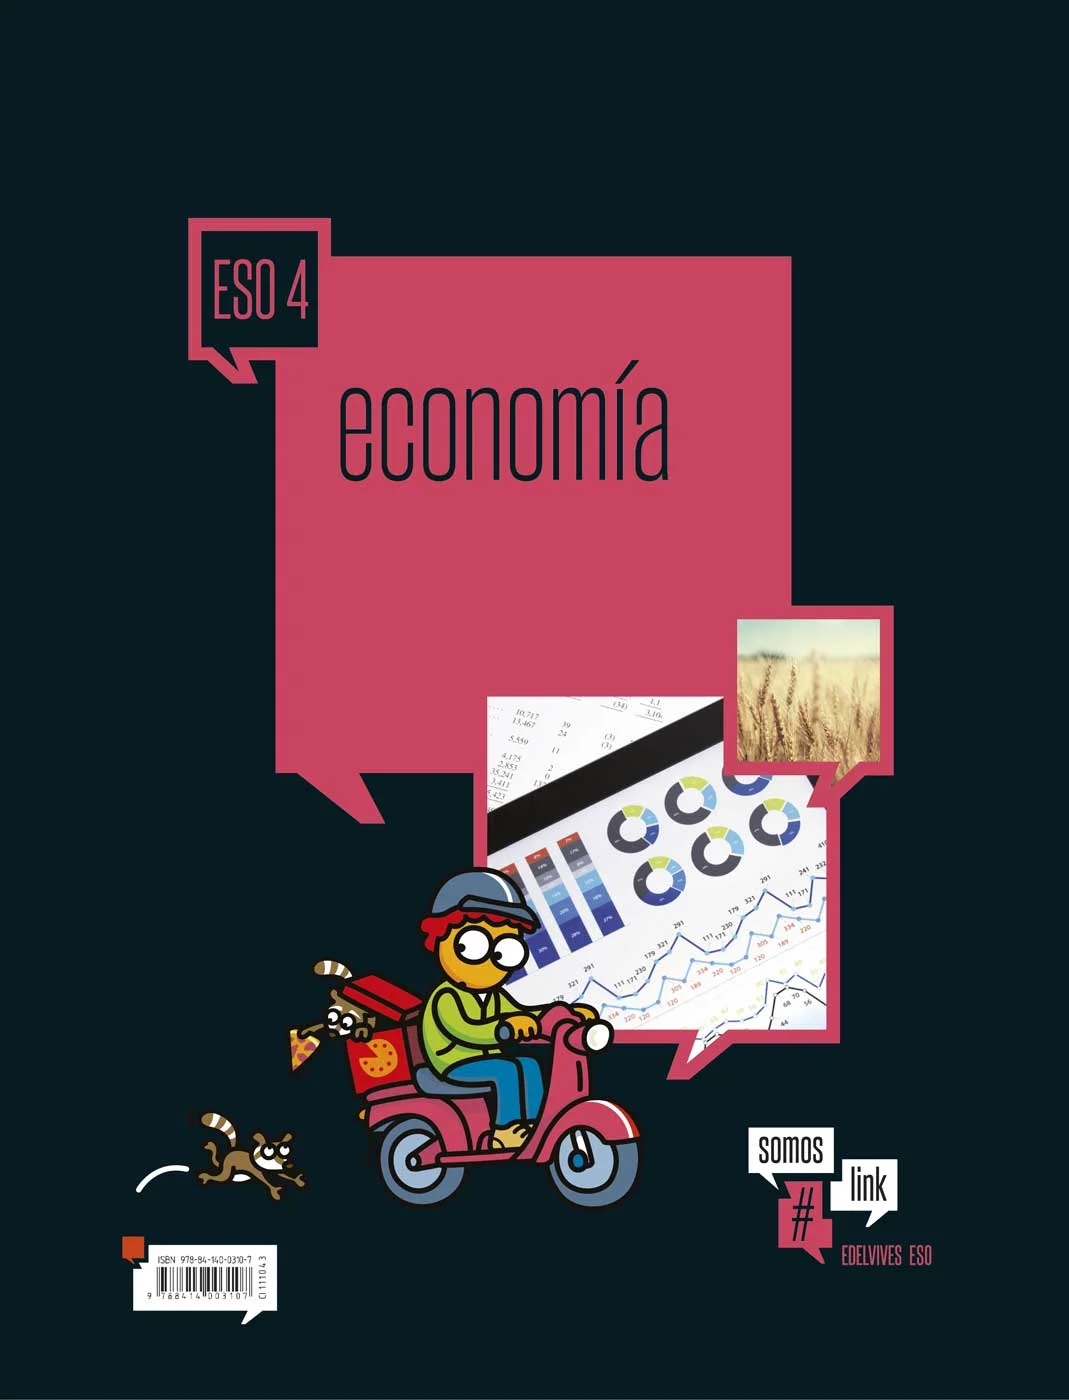 Solucionario Economia 4 ESO Edelvives